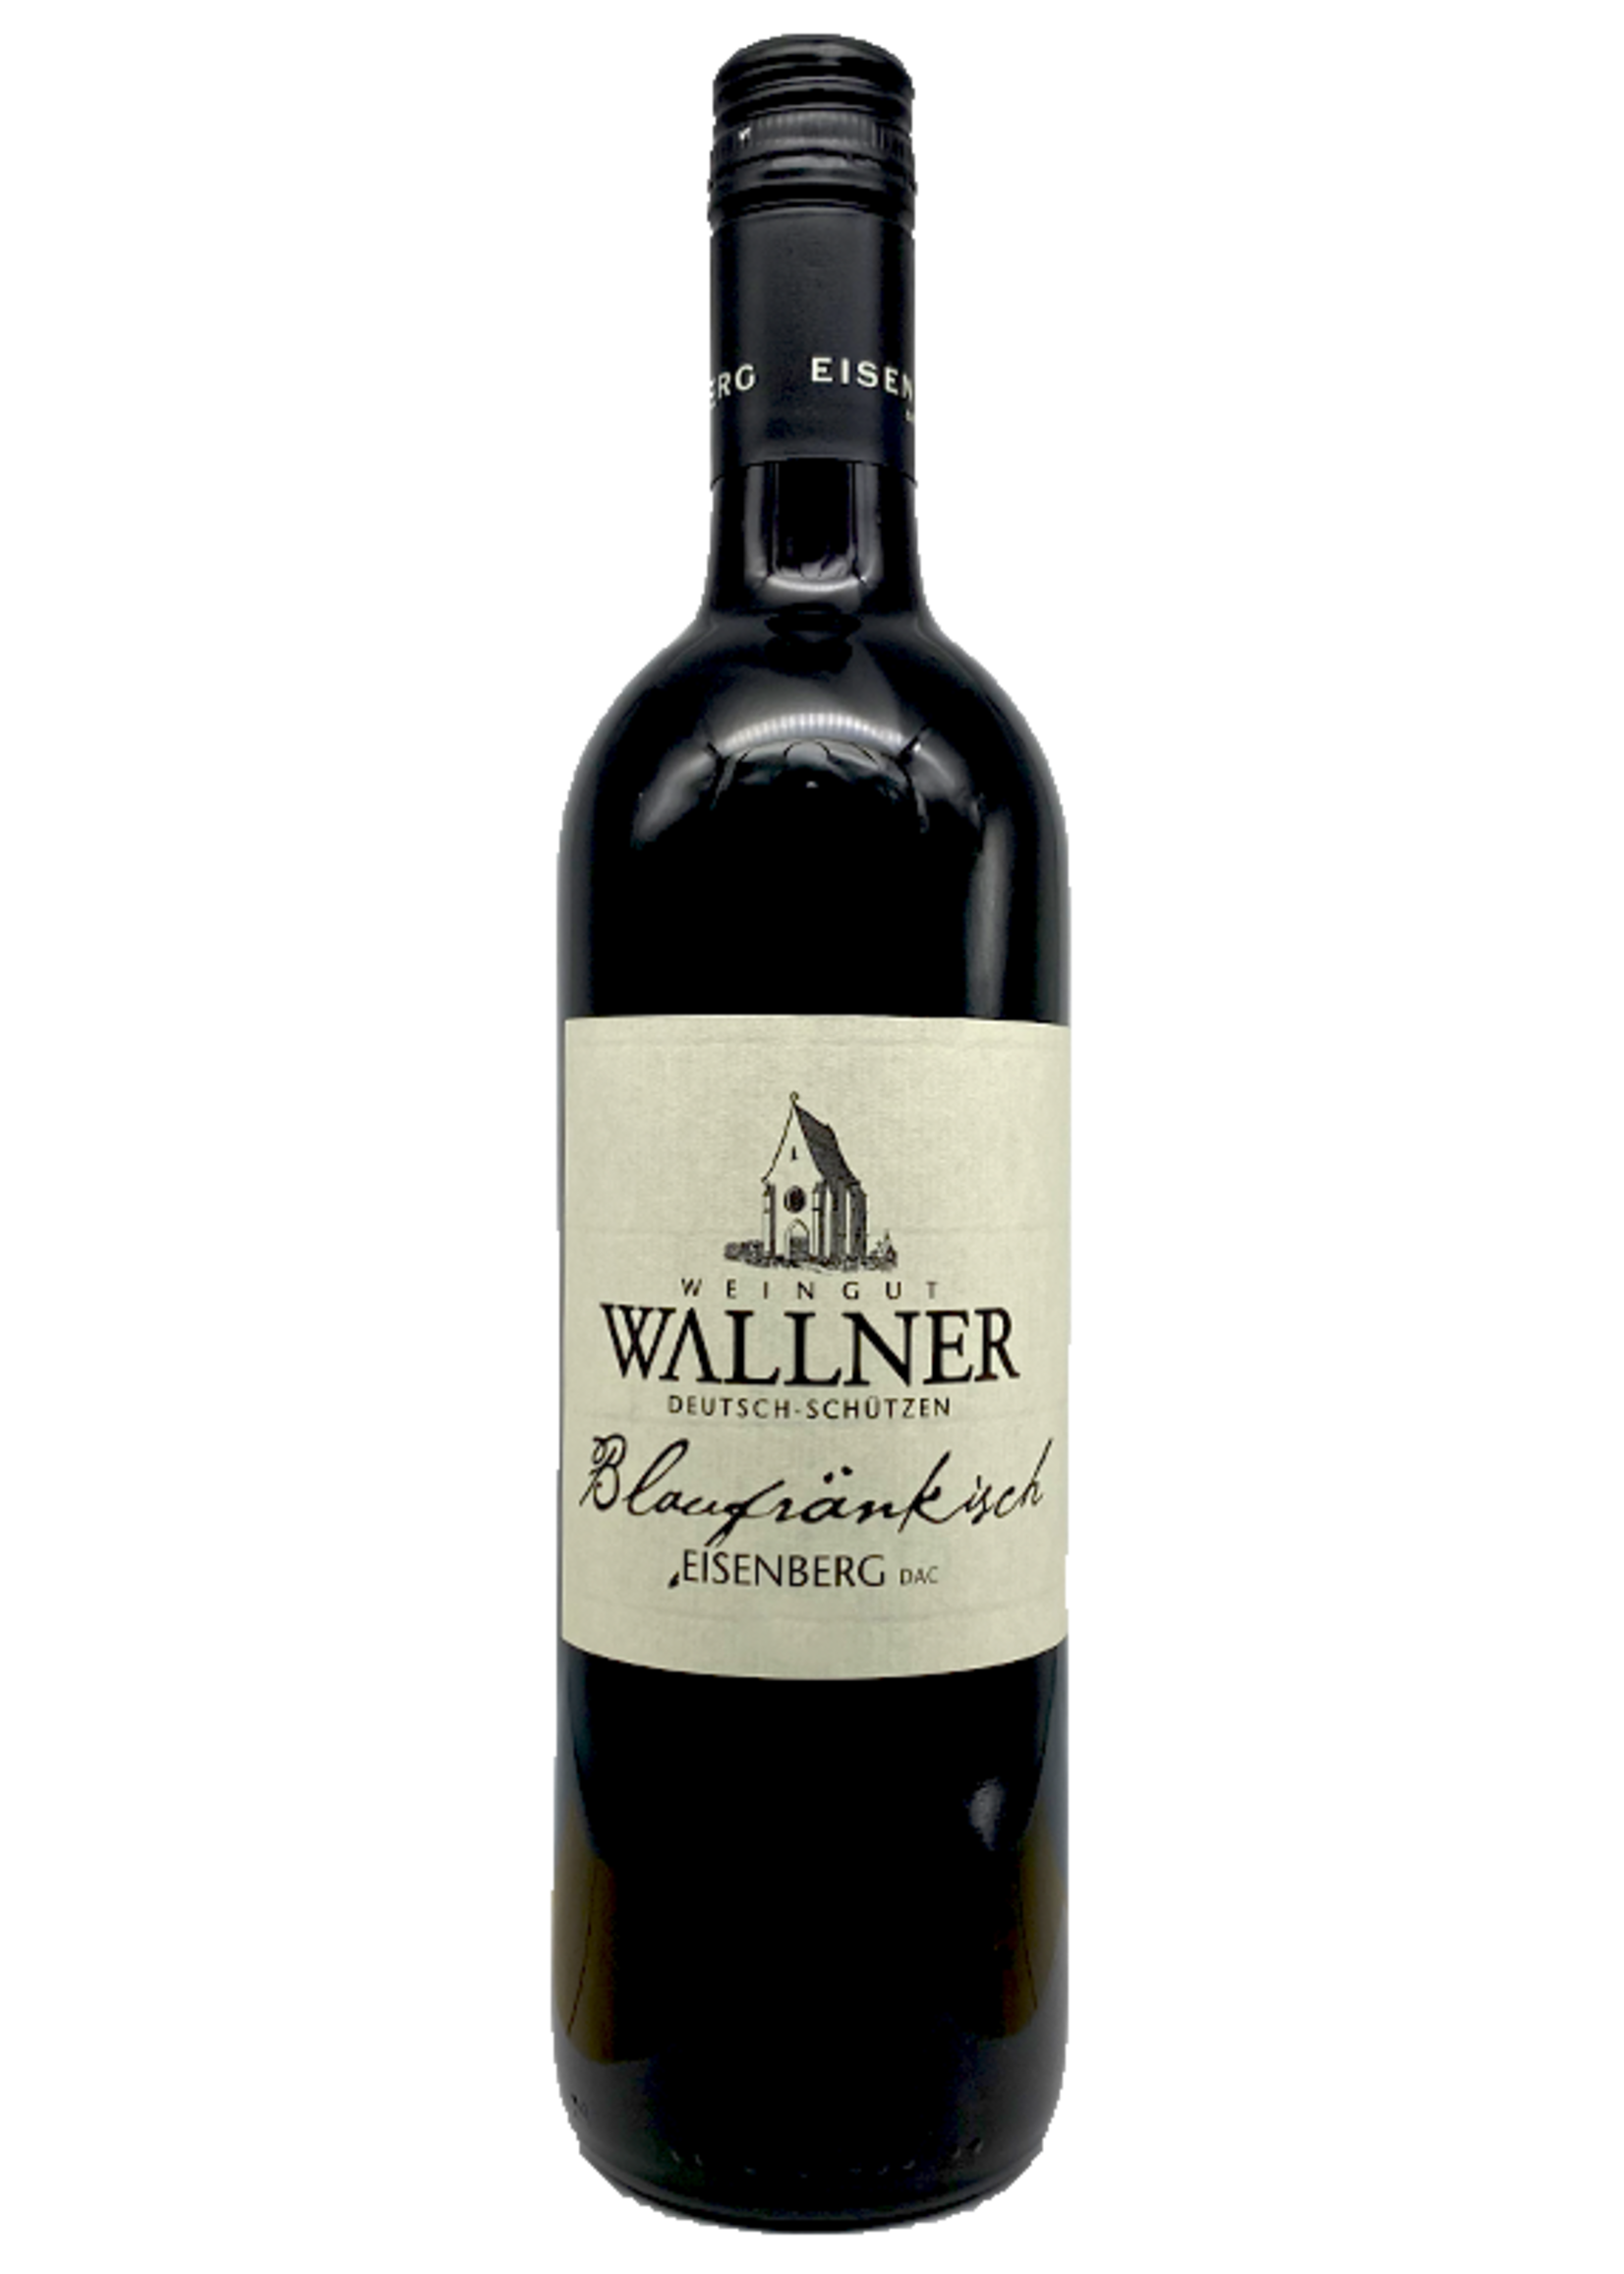 Weingut Wallner Weingut Wallner / Blaufrankisch Eisenberg 2015 / 750mL